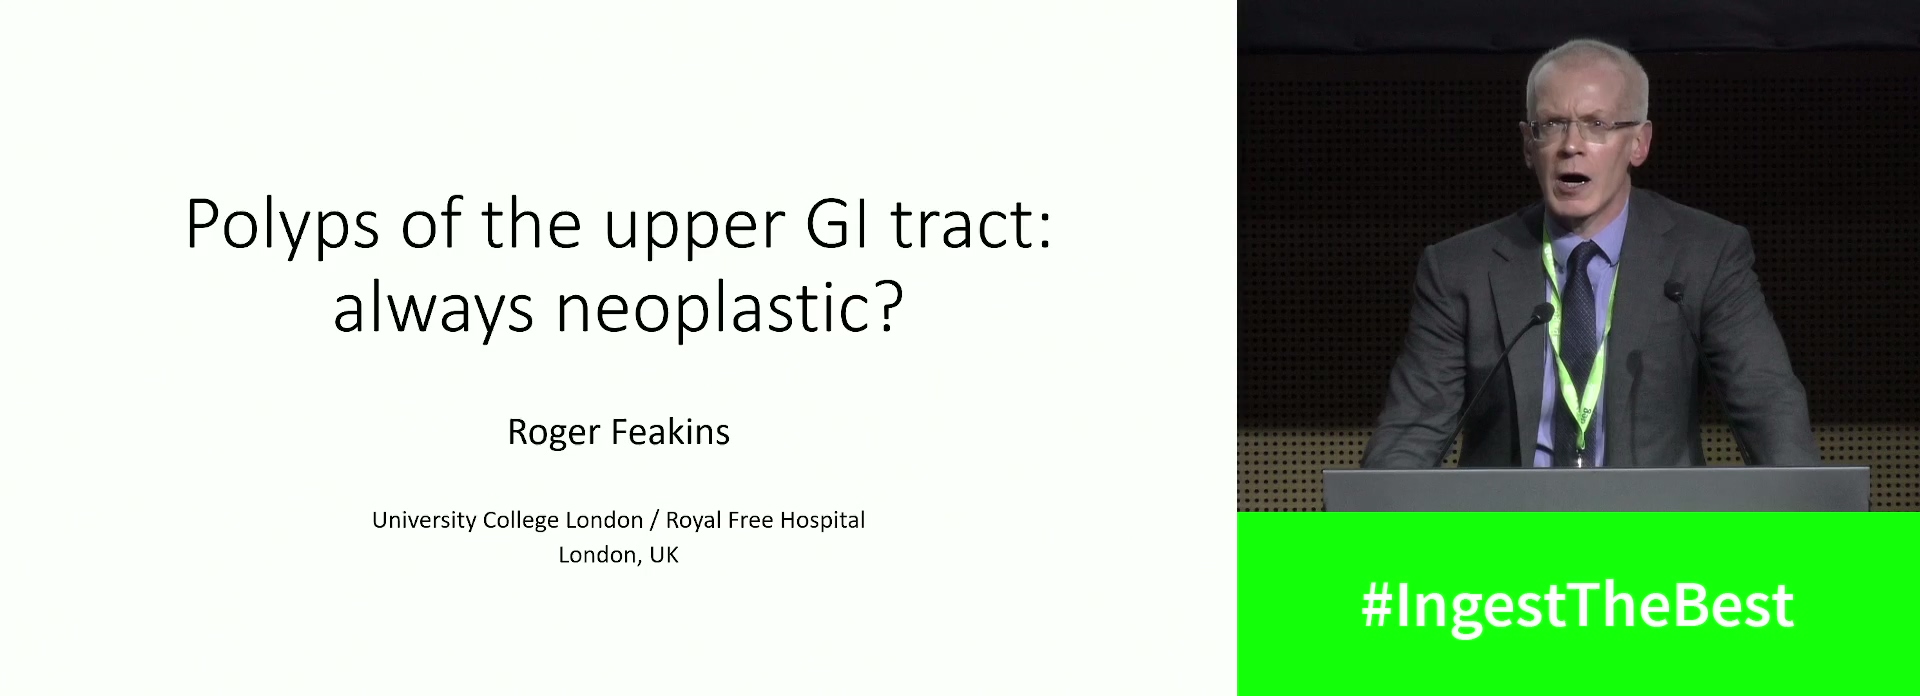 Polyps of the upper GI tract: Always neoplastic?